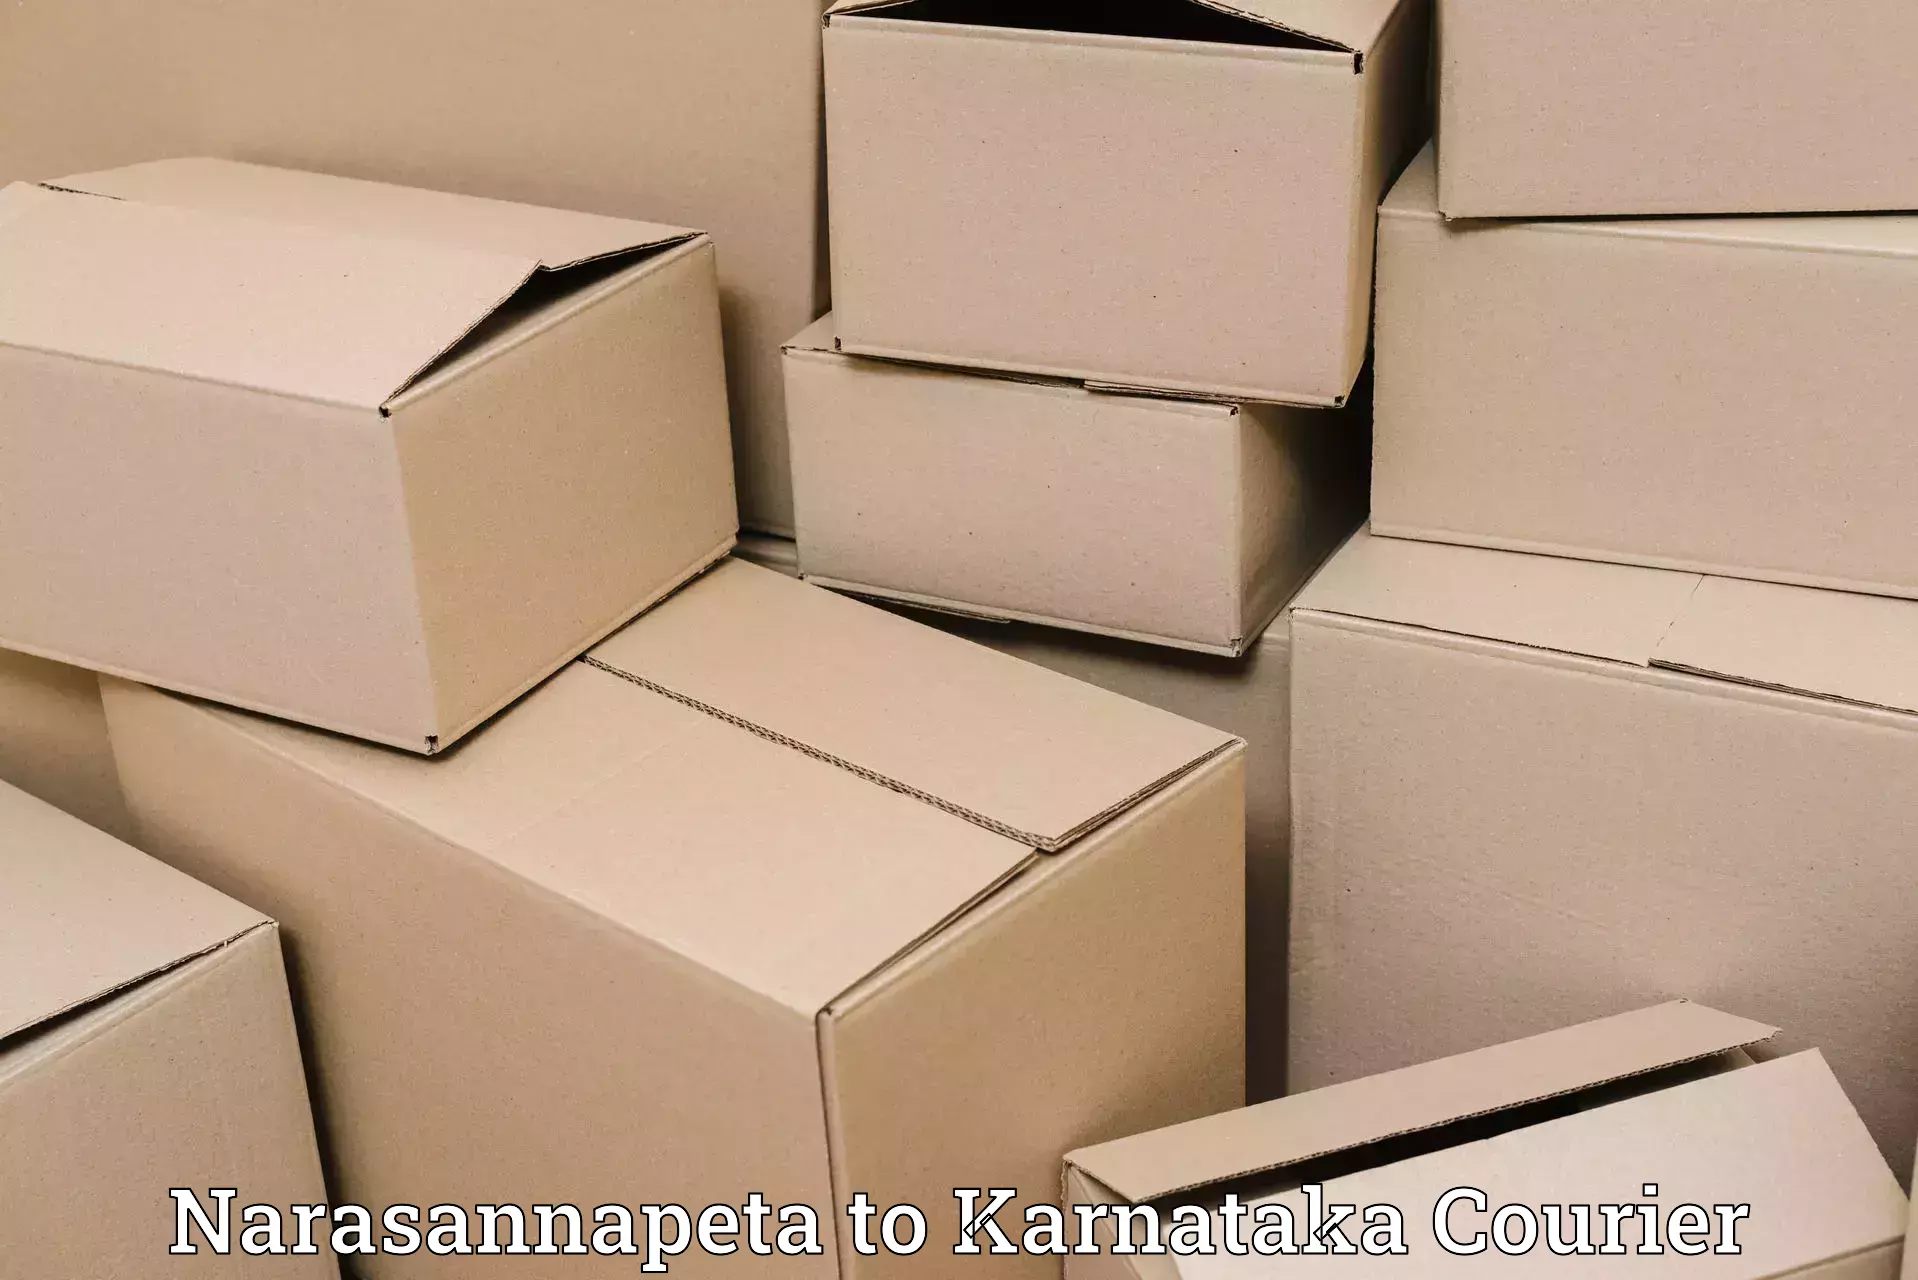 Bulk shipment Narasannapeta to Yaragatti